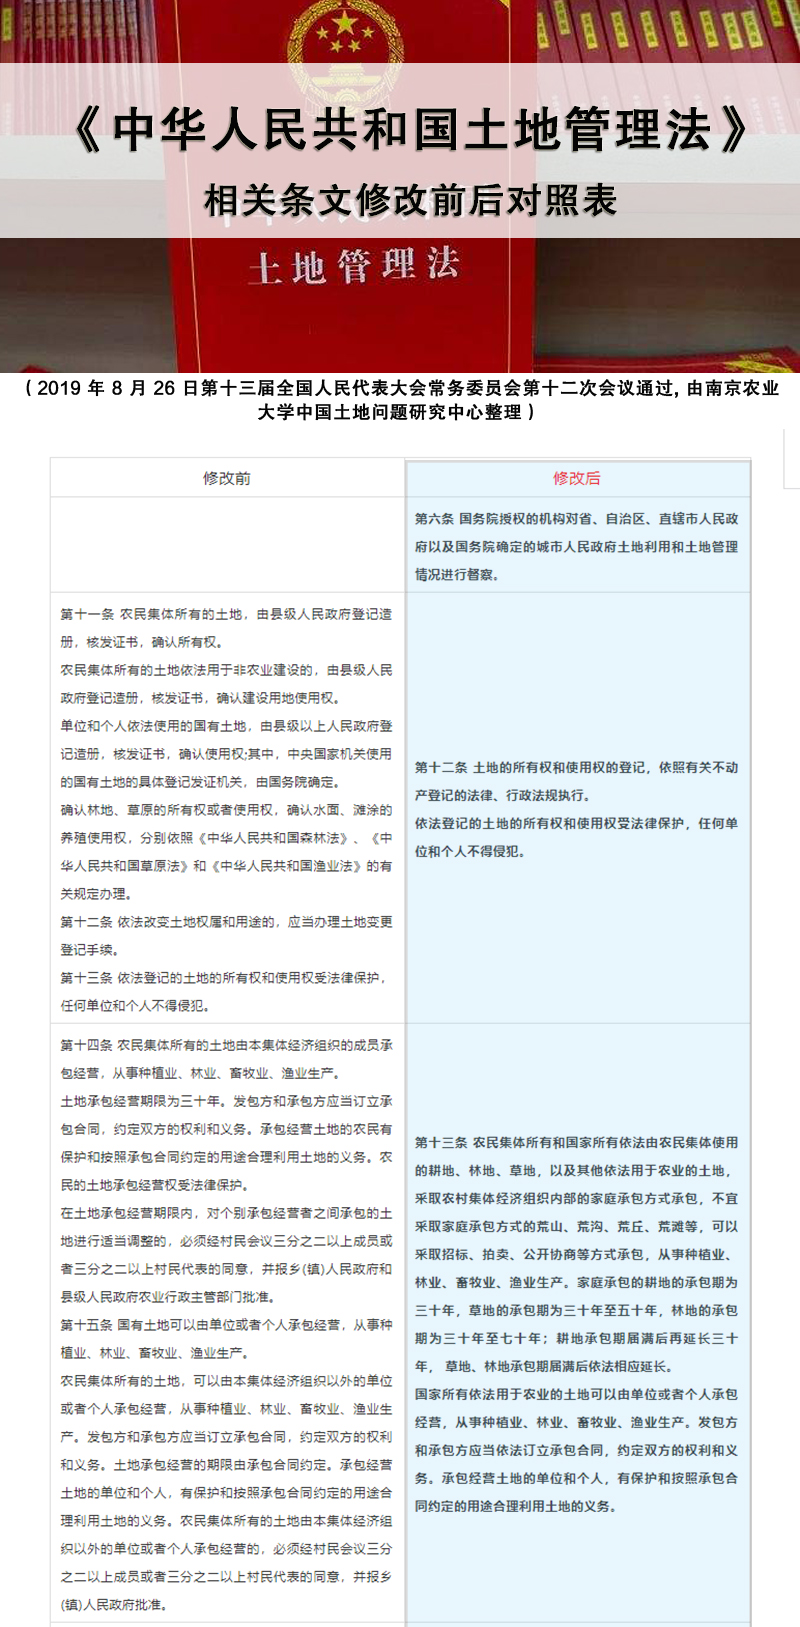 《中华人民共和国土地管理法》 相关条文修改前后对照表1.jpg